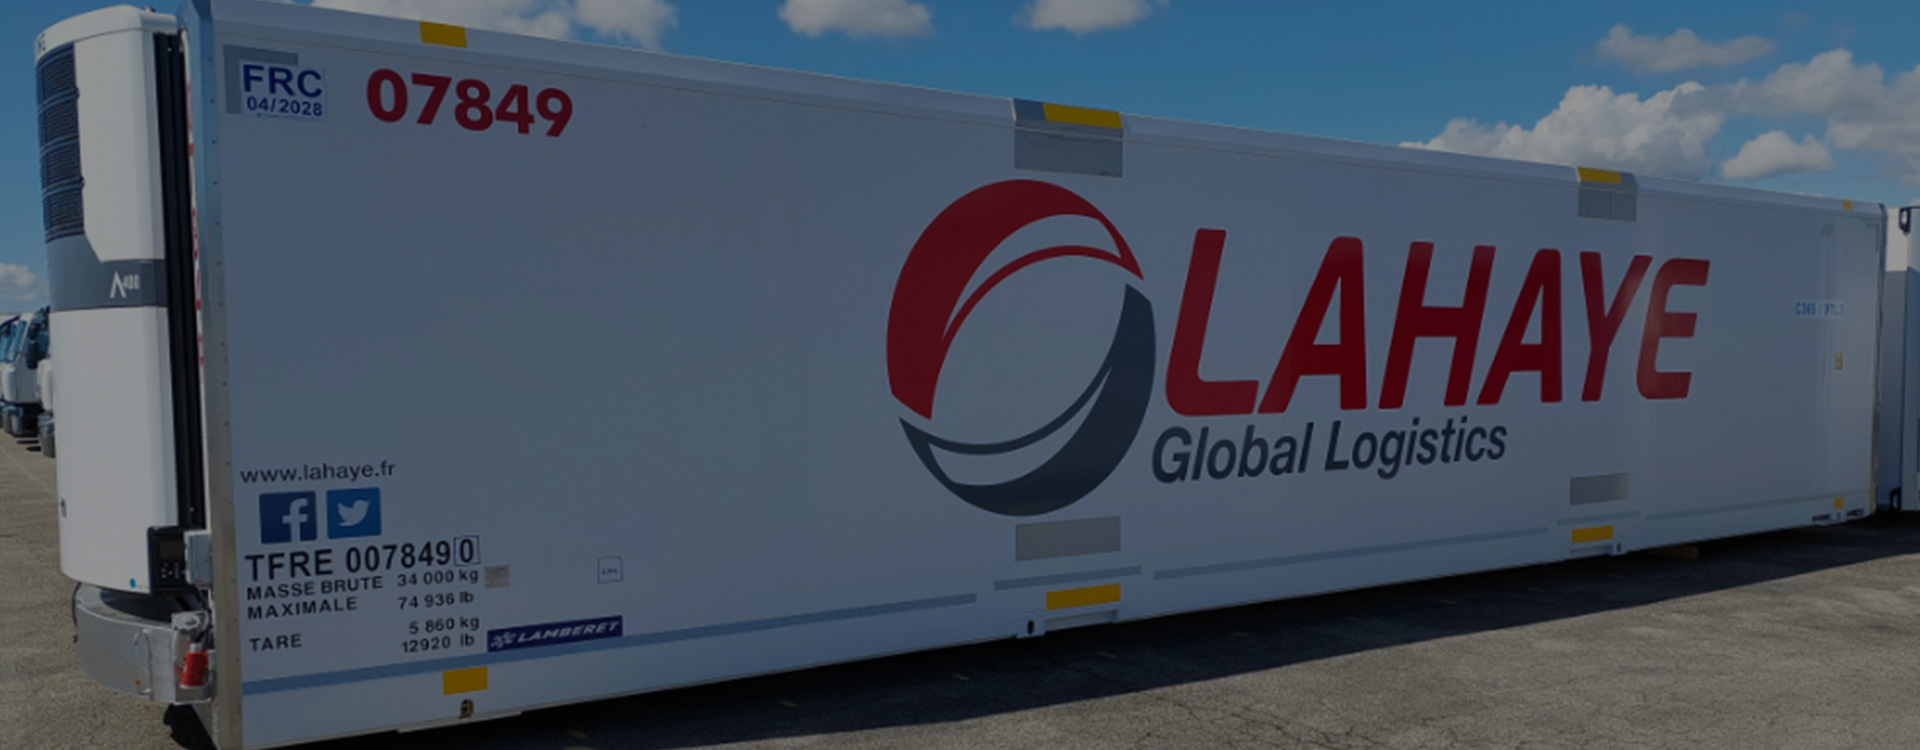 Lahaye Global Logistics Nouvelles Caisses Frigorifiques Couverture